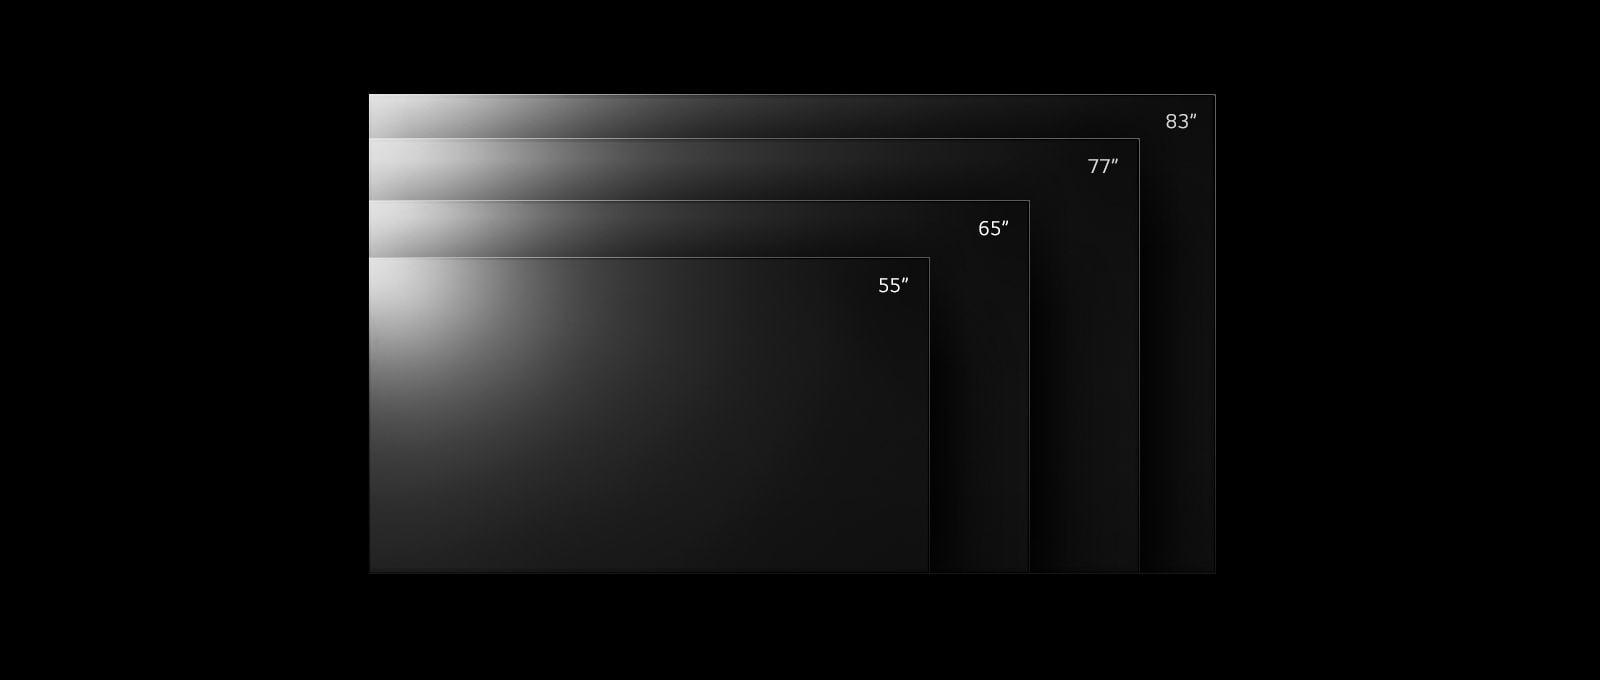 Niz televizora LG OLED G2 u različitim veličinama od 55 do 83 inča